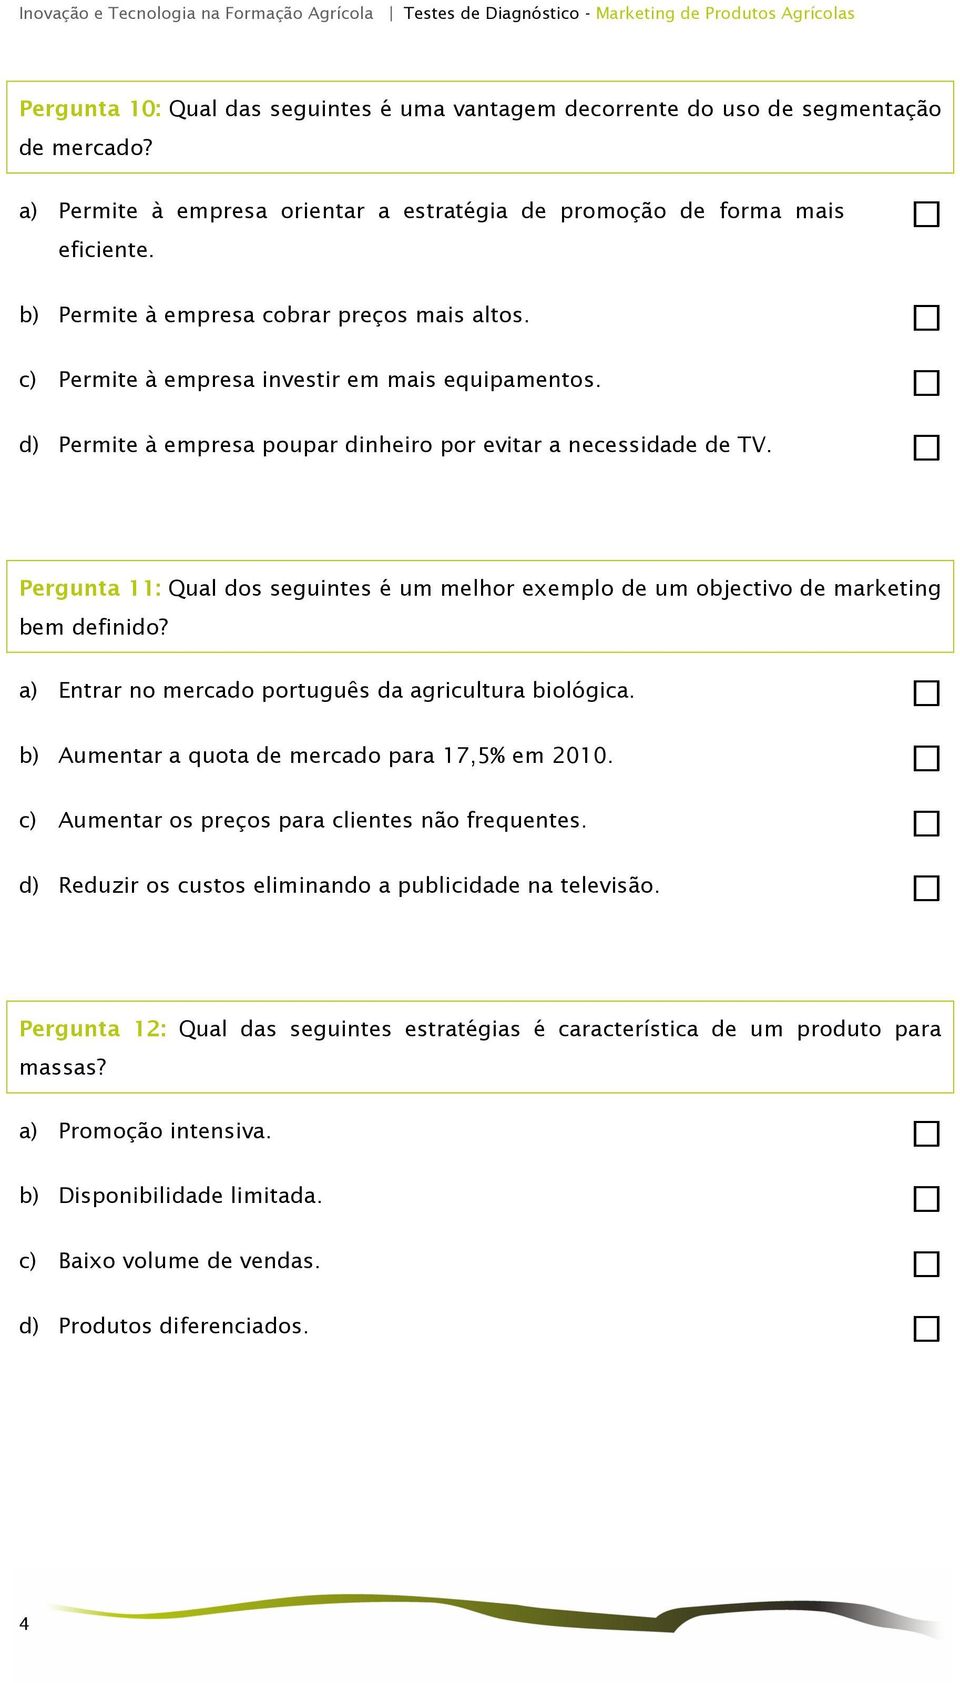 Pergunta 11: Qual dos seguintes é um melhor exemplo de um objectivo de marketing bem definido? a) Entrar no mercado português da agricultura biológica.